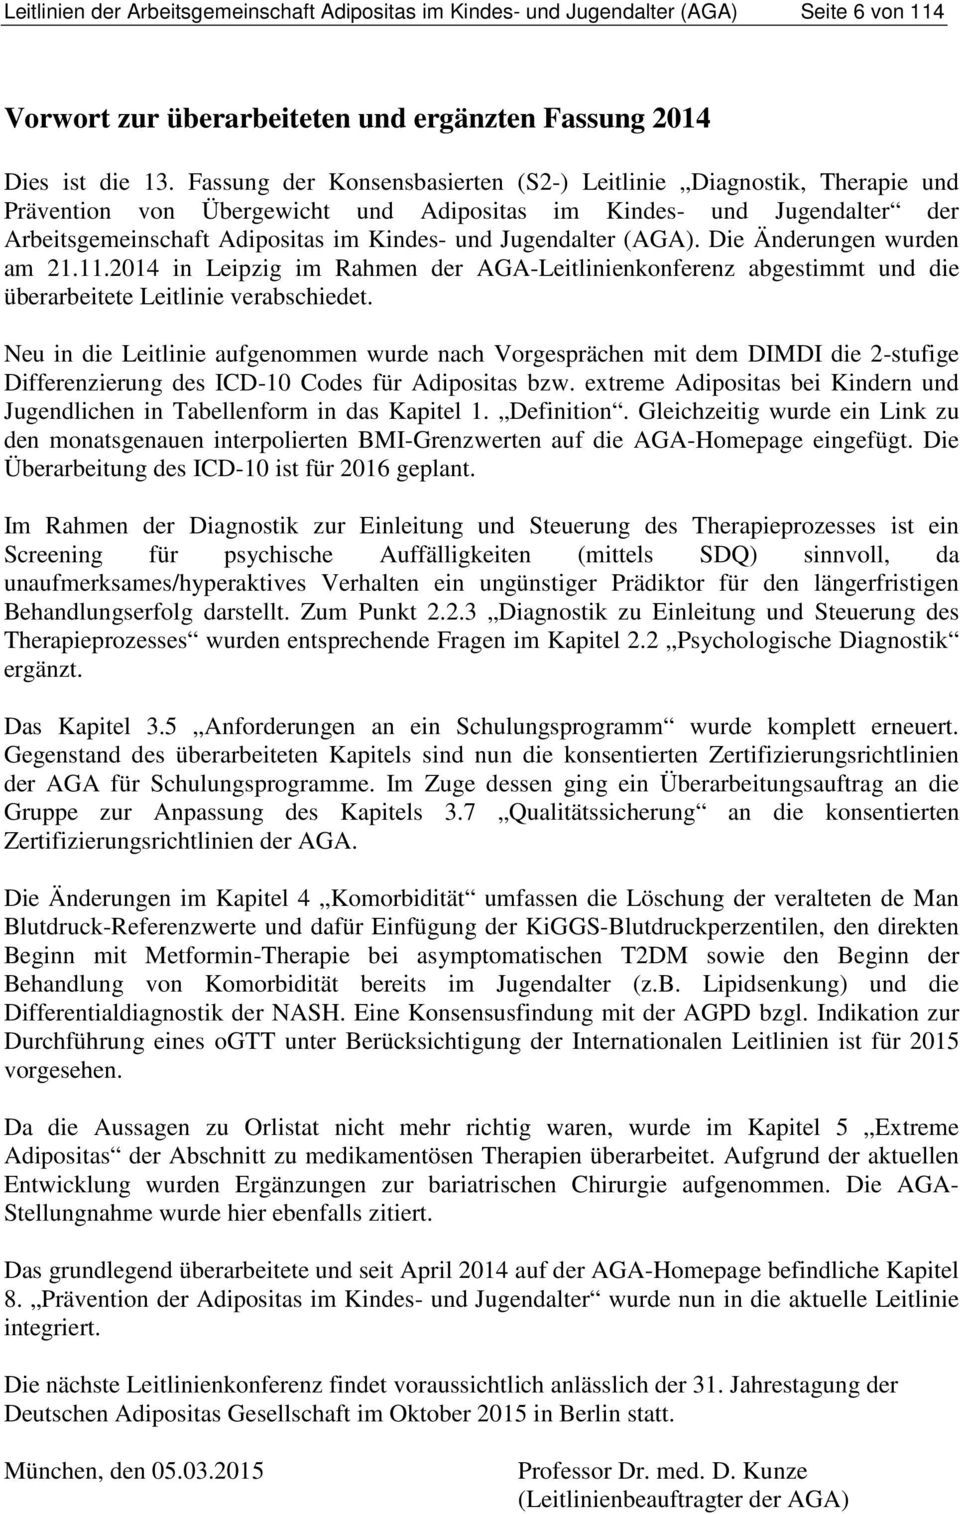 Jugendalter (AGA). Die Änderungen wurden am 21.11.2014 in Leipzig im Rahmen der AGA-Leitlinienkonferenz abgestimmt und die überarbeitete Leitlinie verabschiedet.